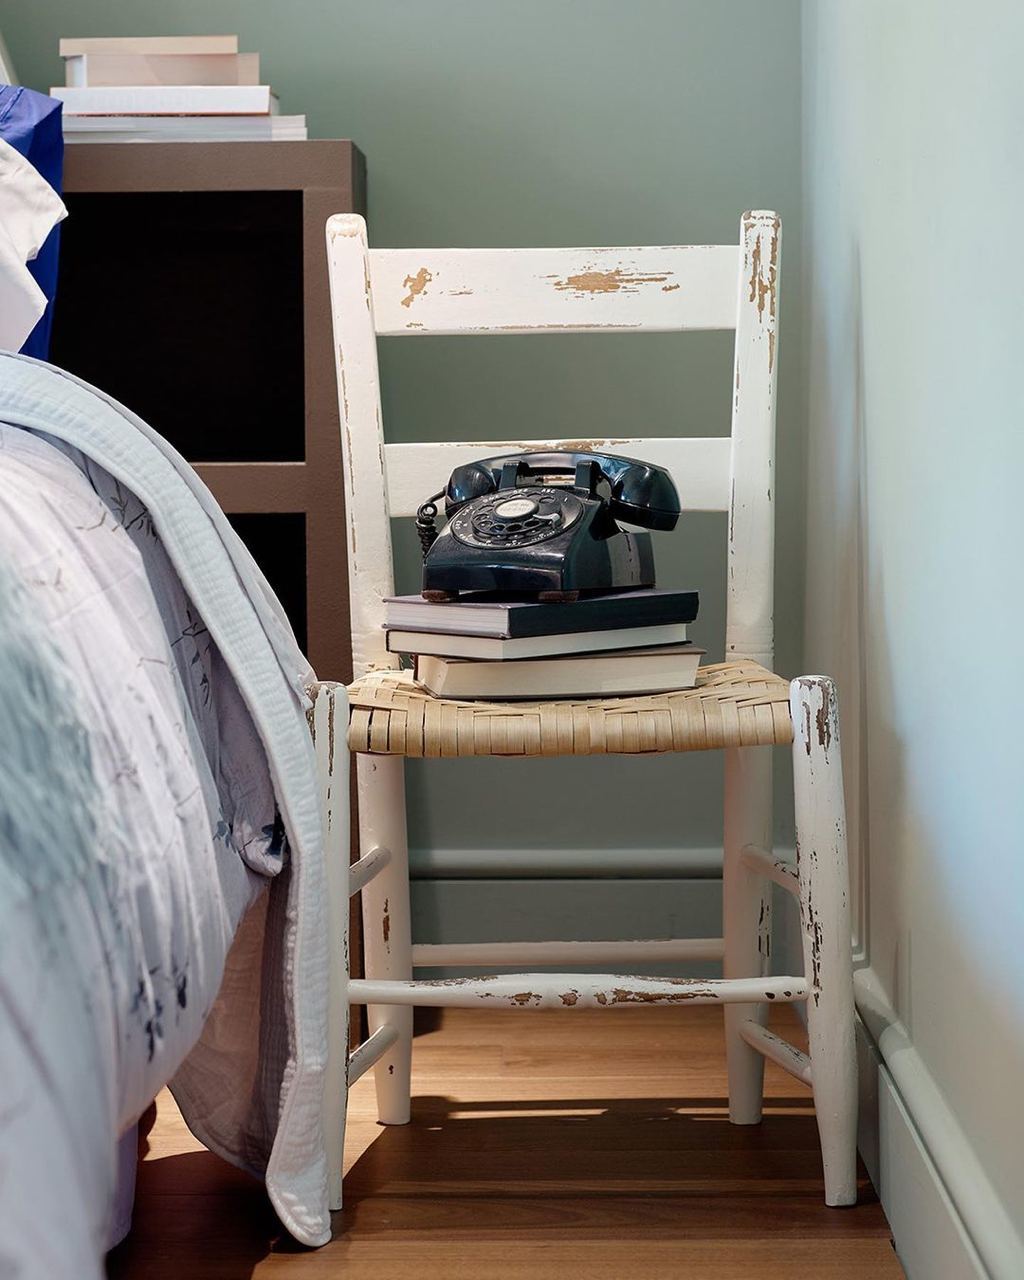 Квартиру Кэрри Брэдшоу теперь можно арендовать на Airbnb (фото 4)